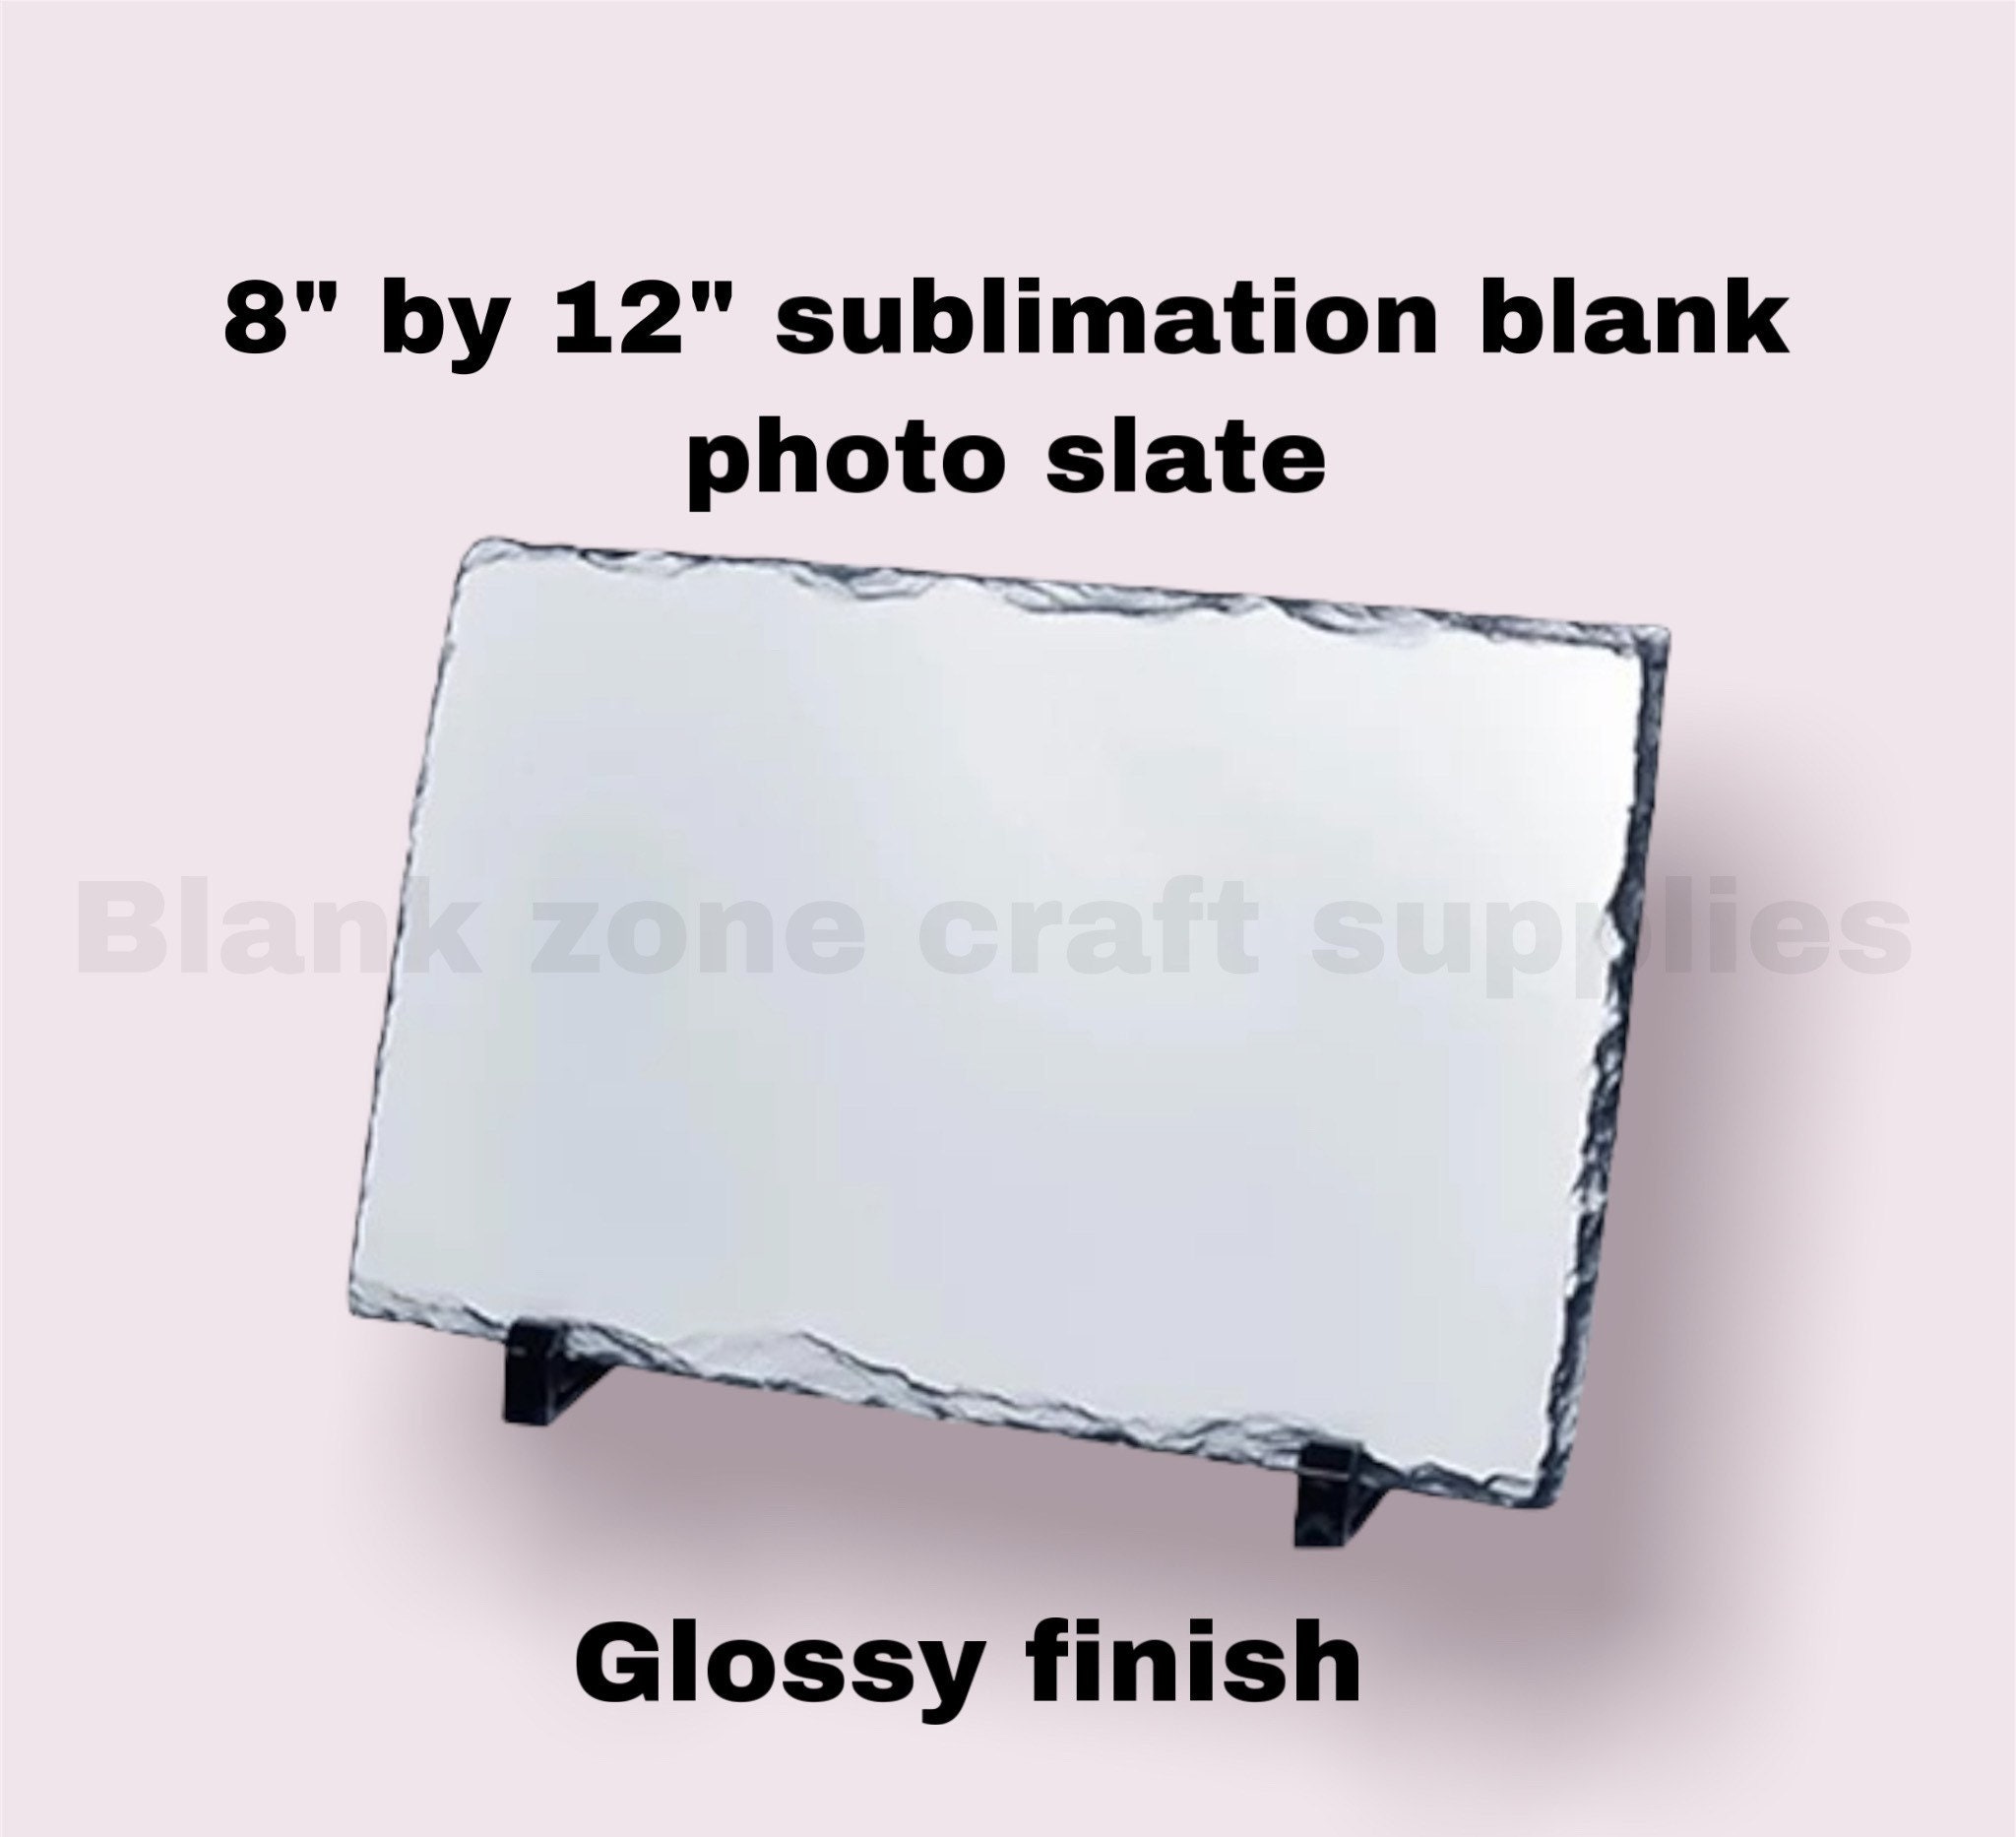 Glossy Finish SUBLIMATION PHOTO SLATE 